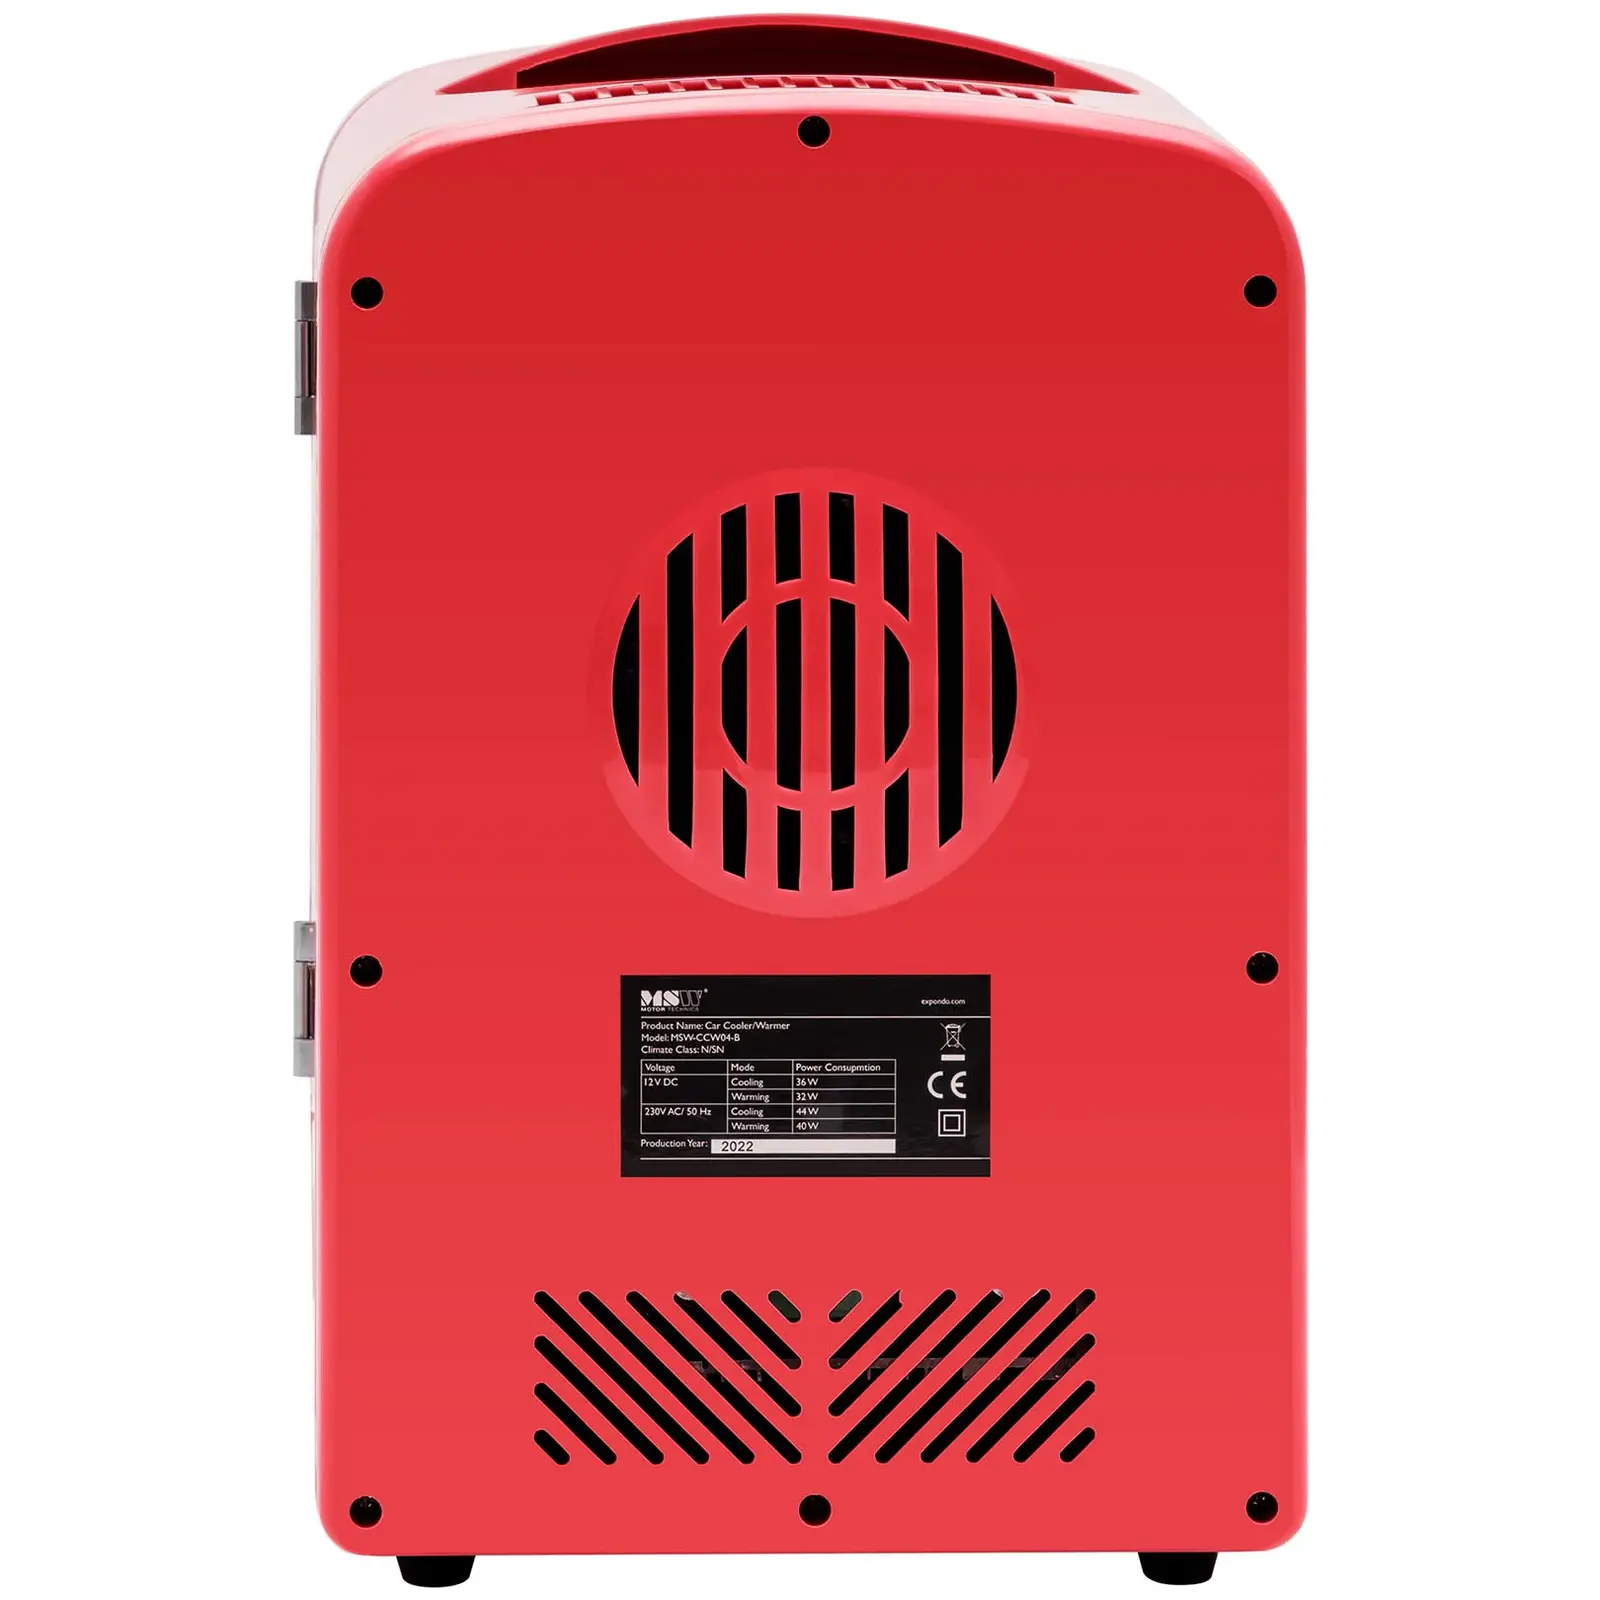 Мини хладилник 12 V / 230 V - уред 2 в 1 с функция за поддържане на топлината - 4 L - Червен